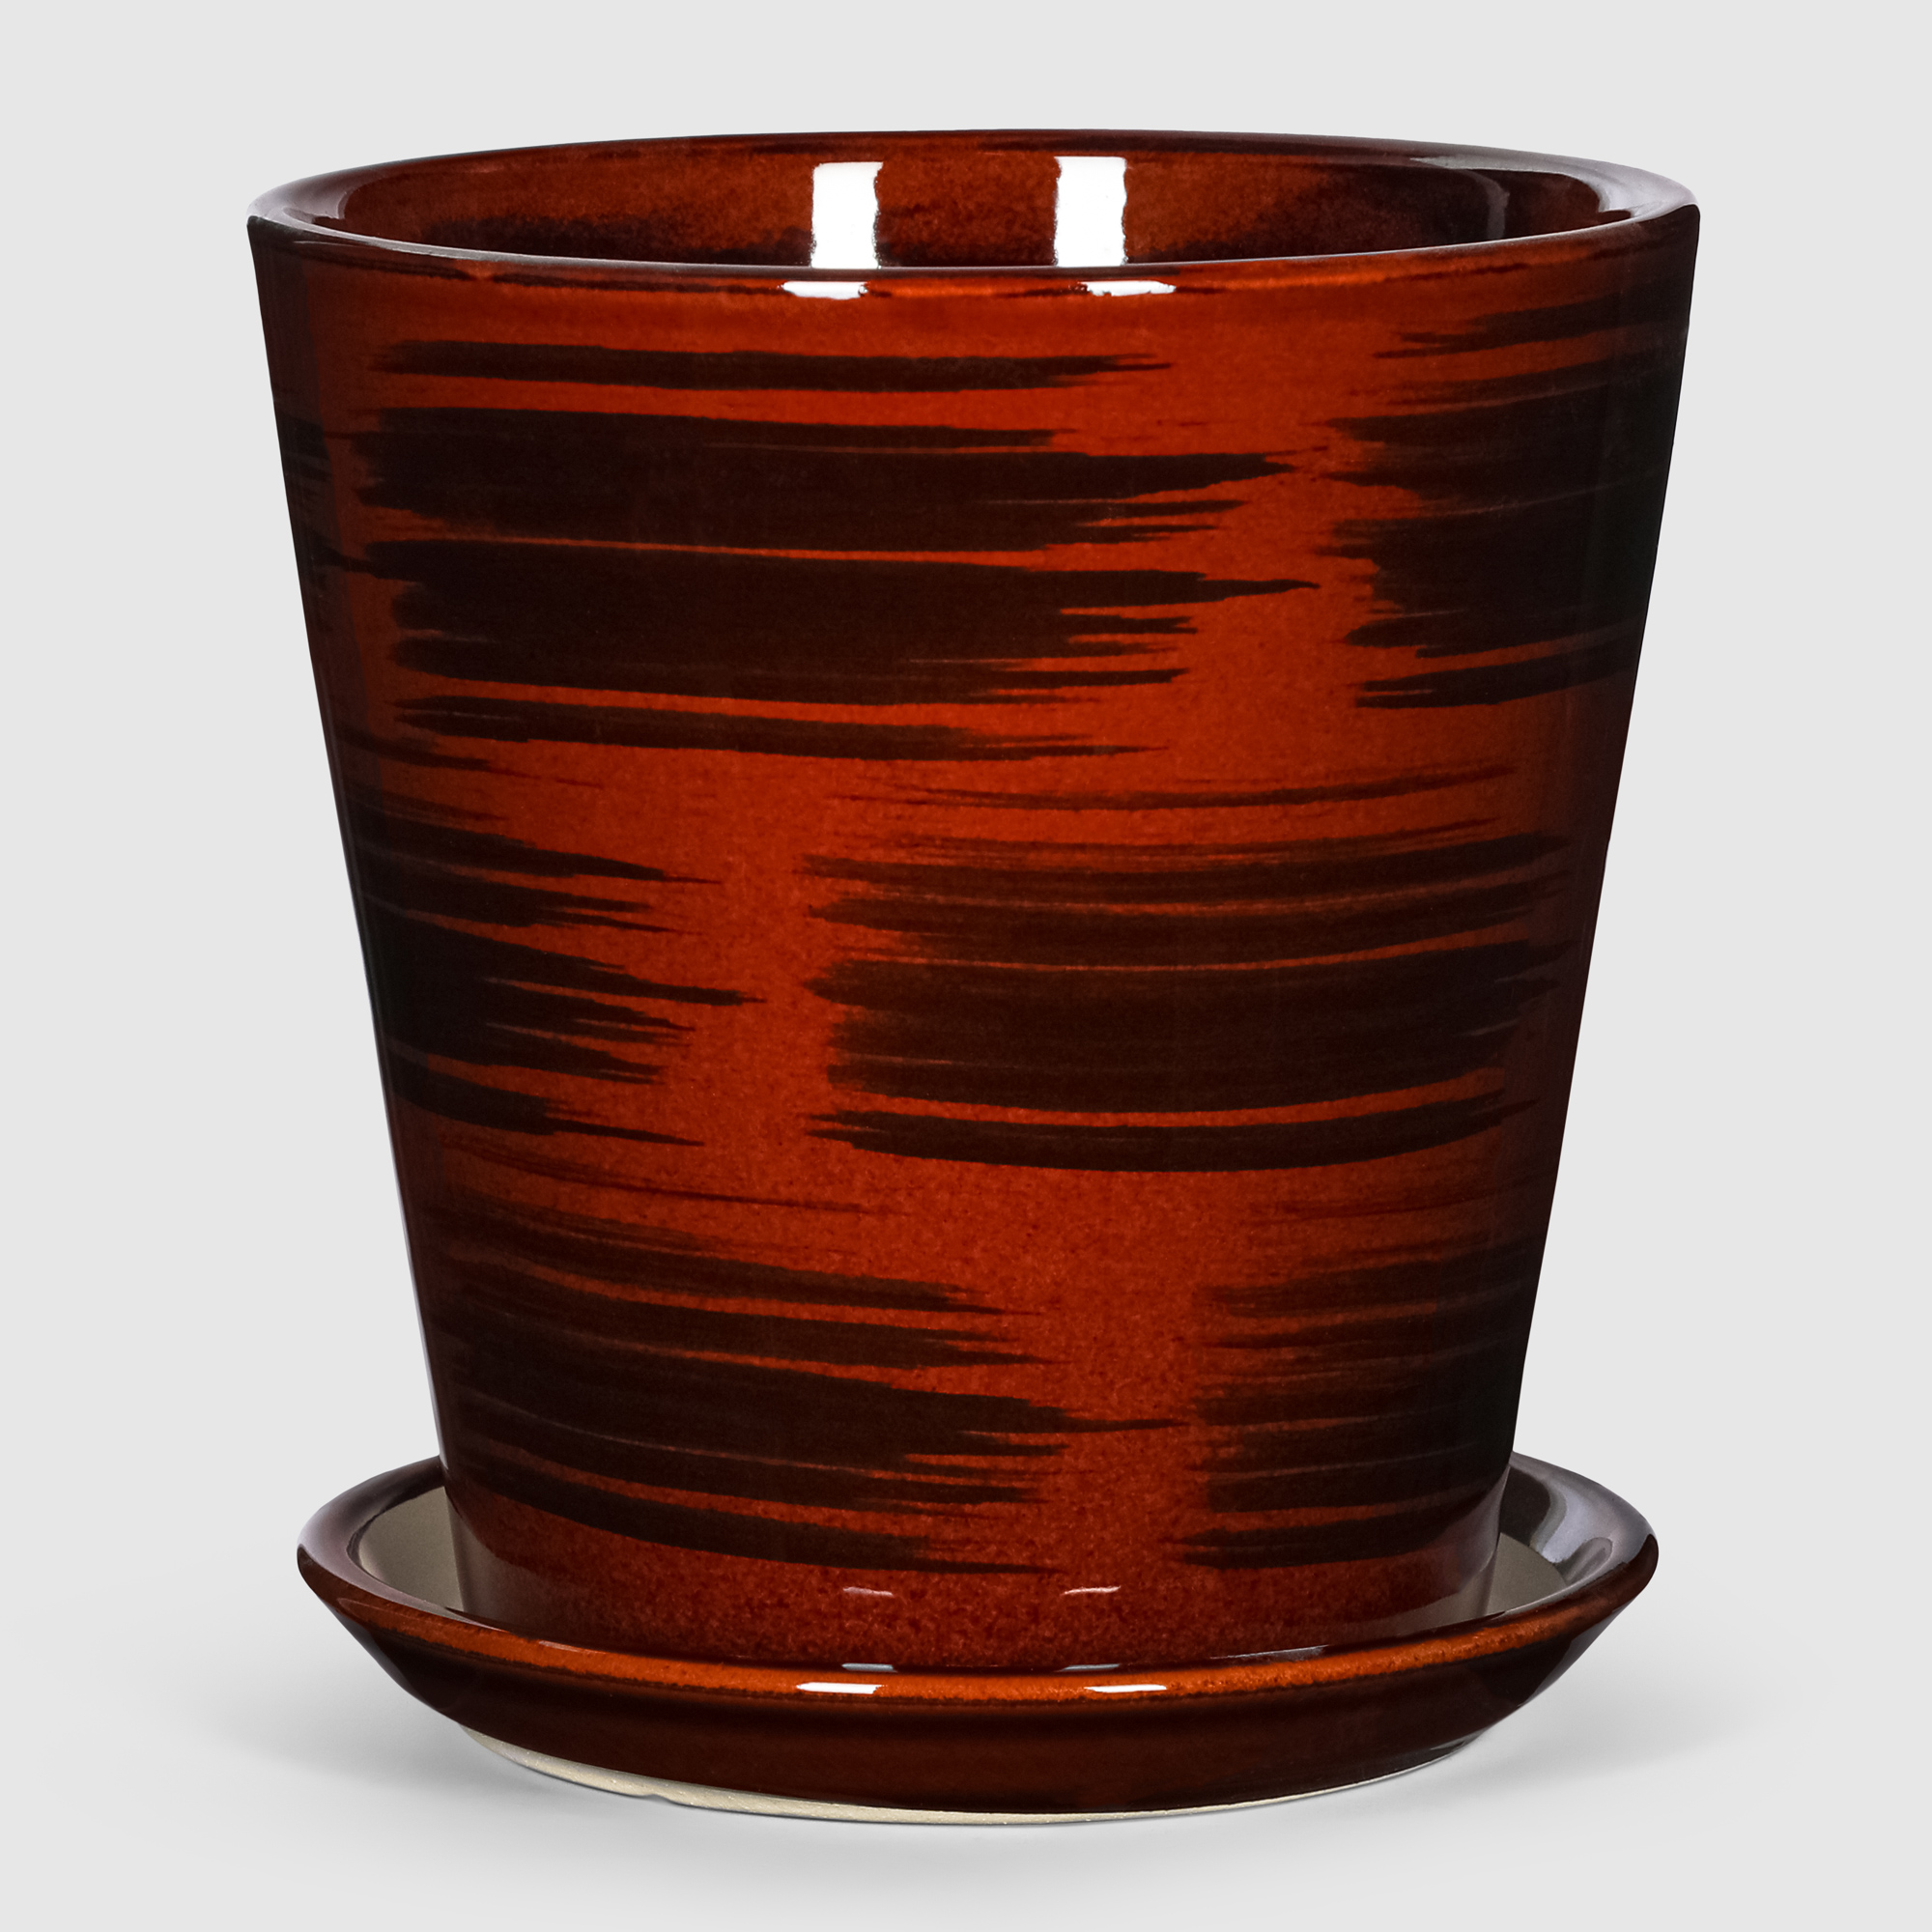 Кашпо керамическое для цветов Shine Pots 16x17см коричневый глянец кашпо керамическое для ов shine pots 16x17см антрацит